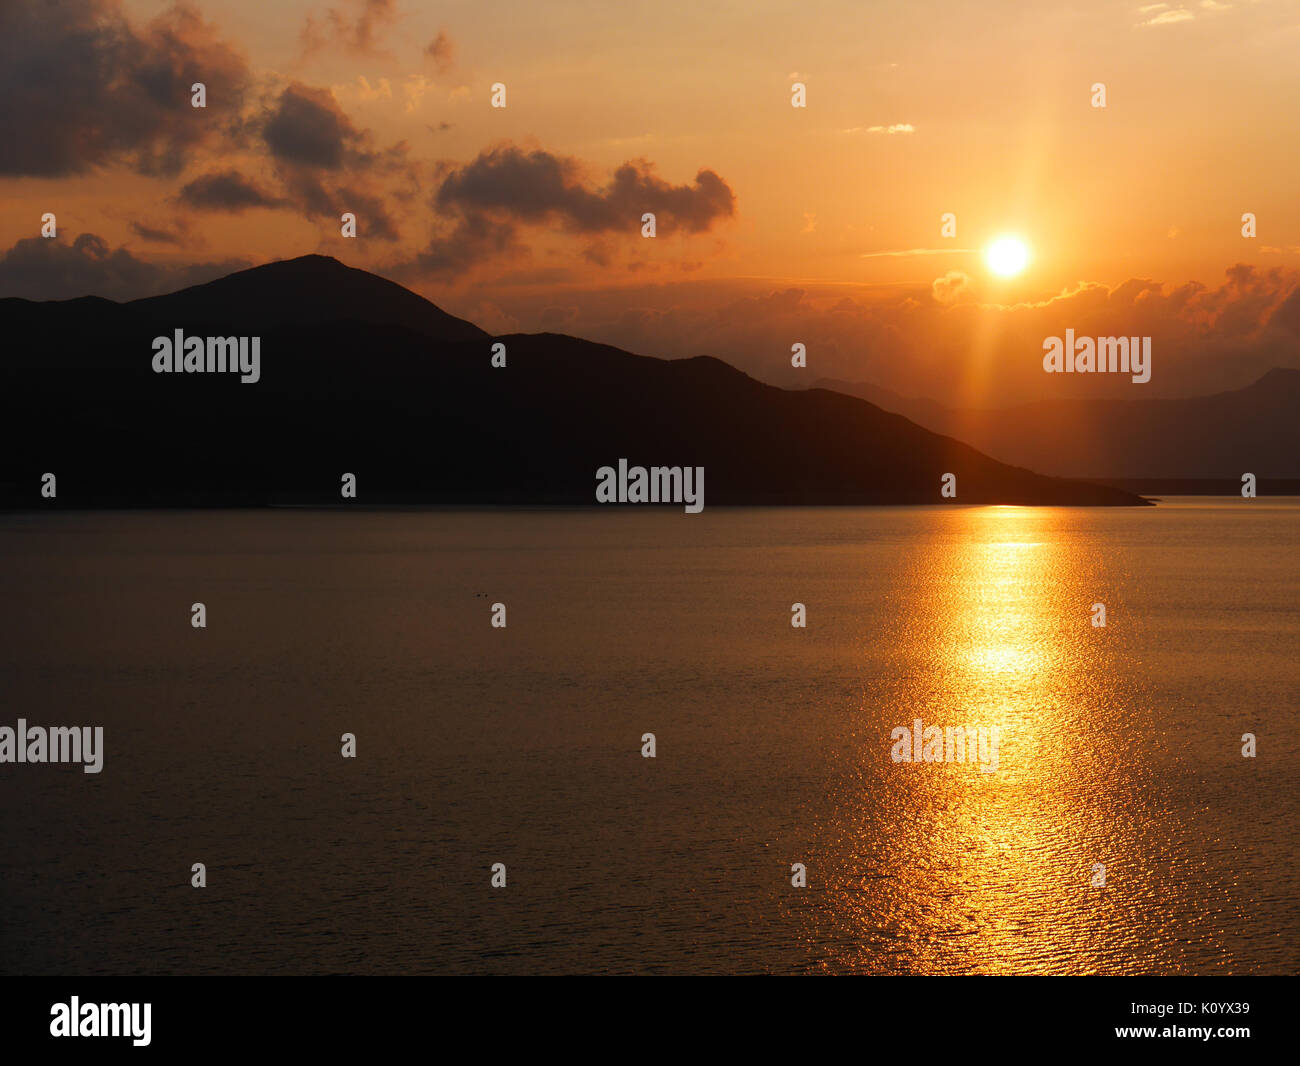 Sunset at High Island Reservoir (Lake), Sai Kung, Hong Kong Stock Photo